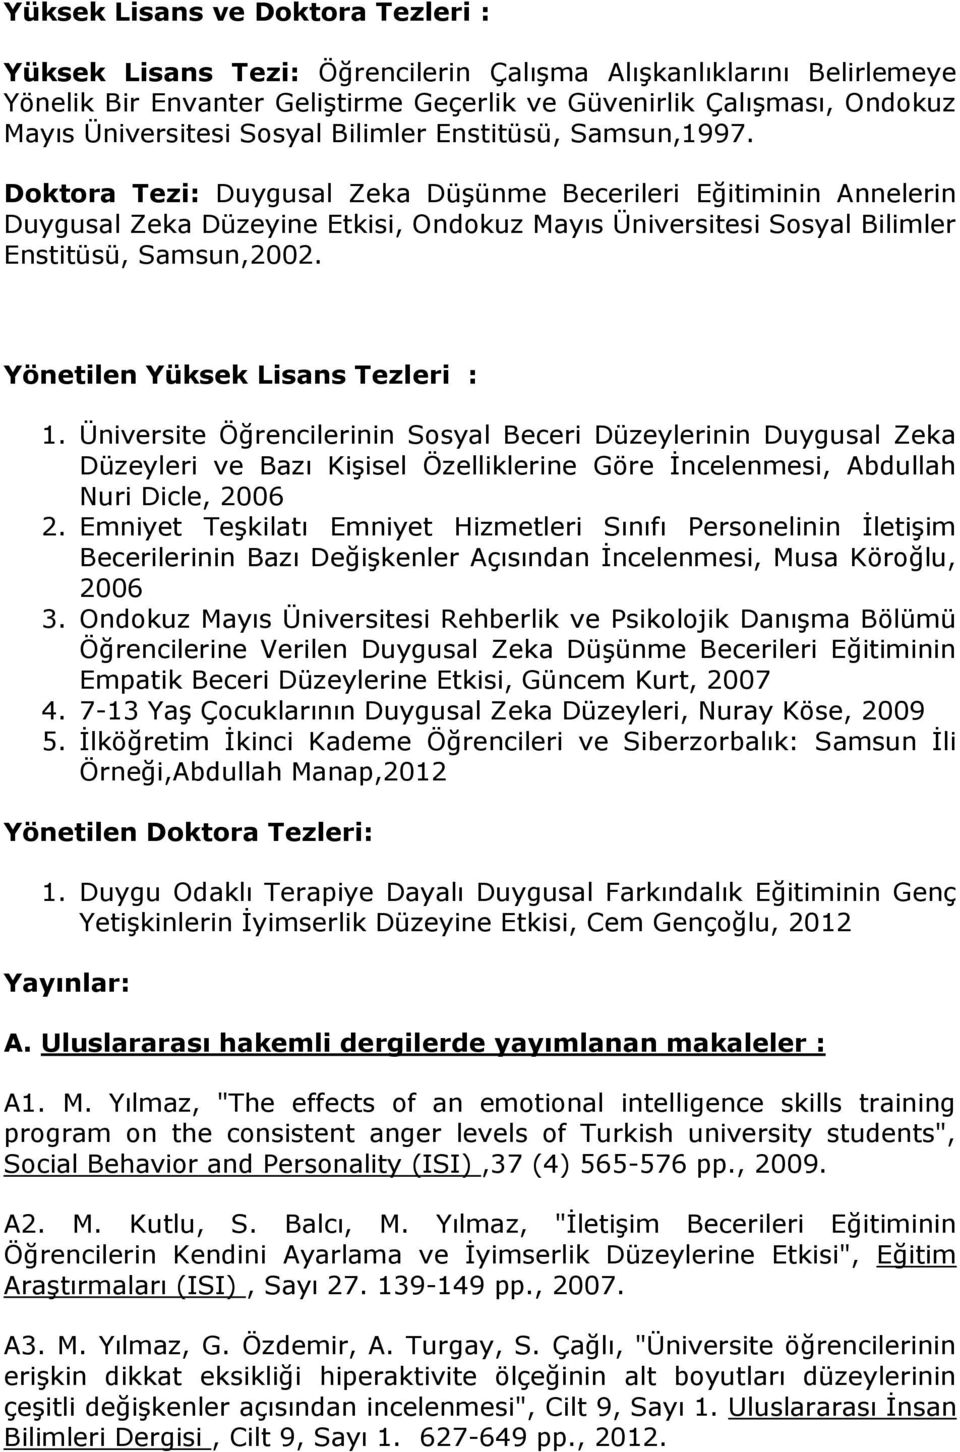 Doktora Tezi: Duygusal Zeka Düşünme Becerileri Eğitiminin Annelerin Duygusal Zeka Düzeyine Etkisi, Ondokuz Mayıs Üniversitesi Sosyal Bilimler Enstitüsü, Samsun,2002.